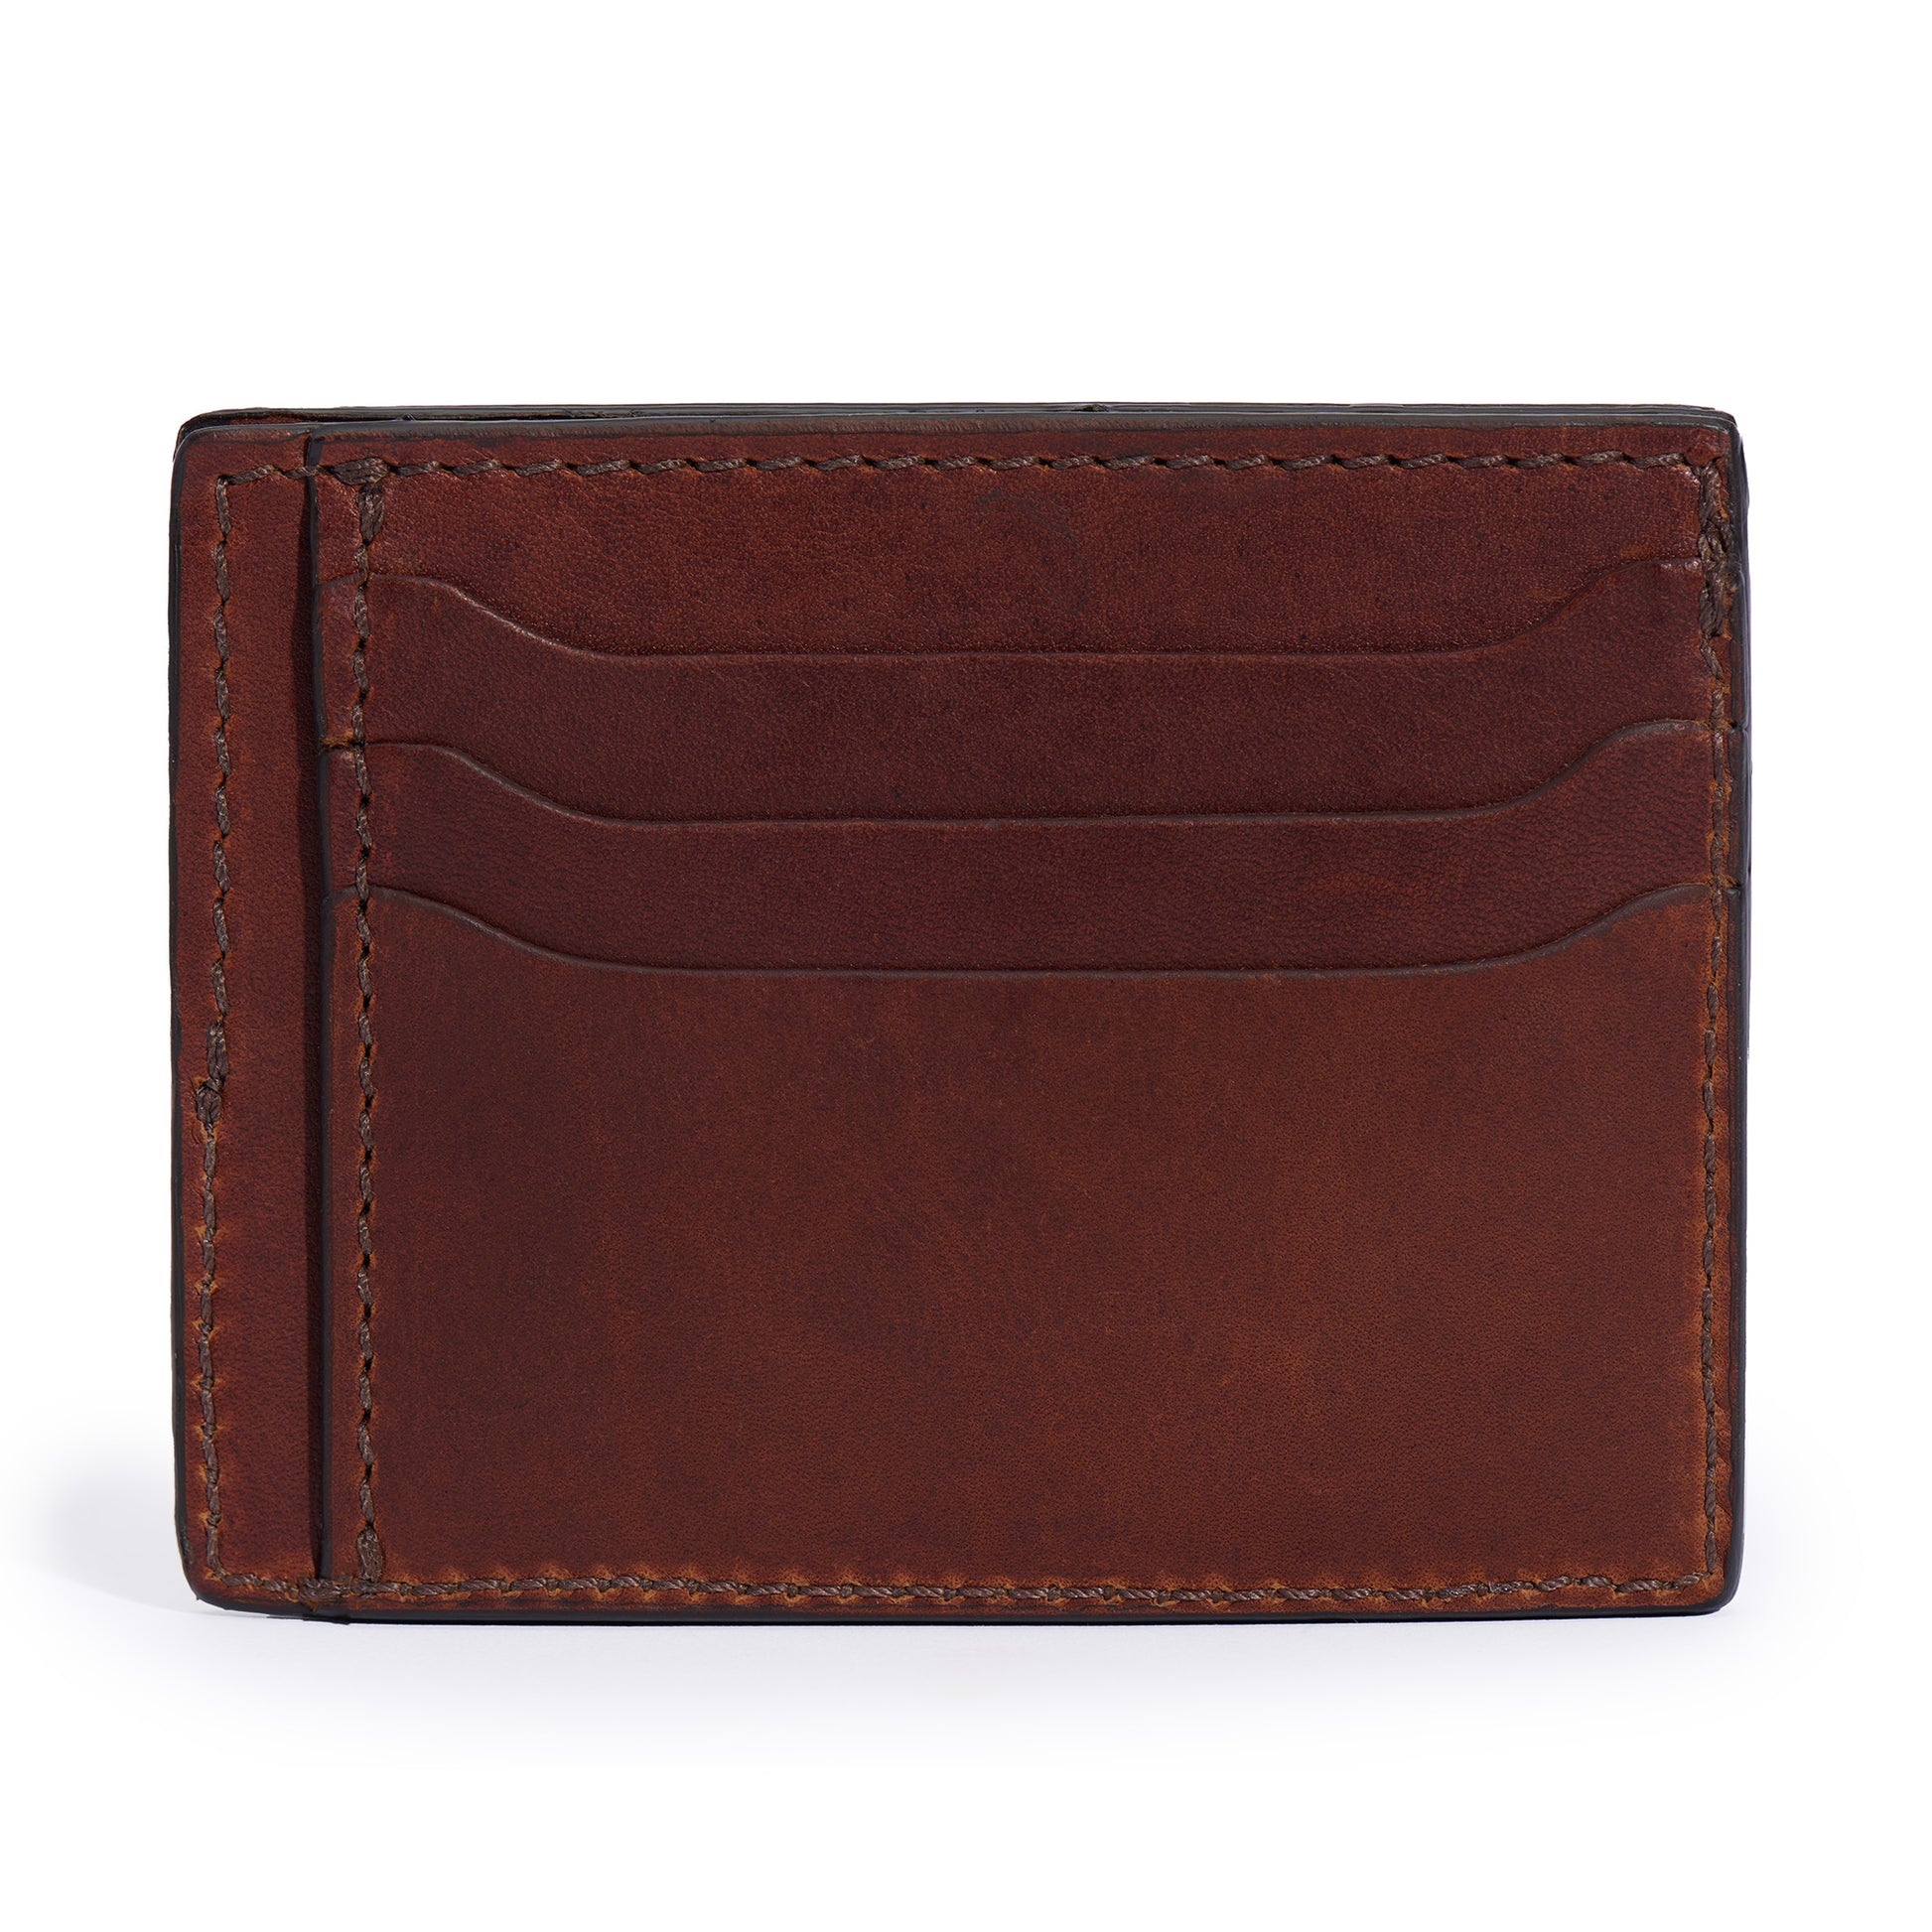 full grain leather slim wallet in vintage brown color by Jackson Wayne 